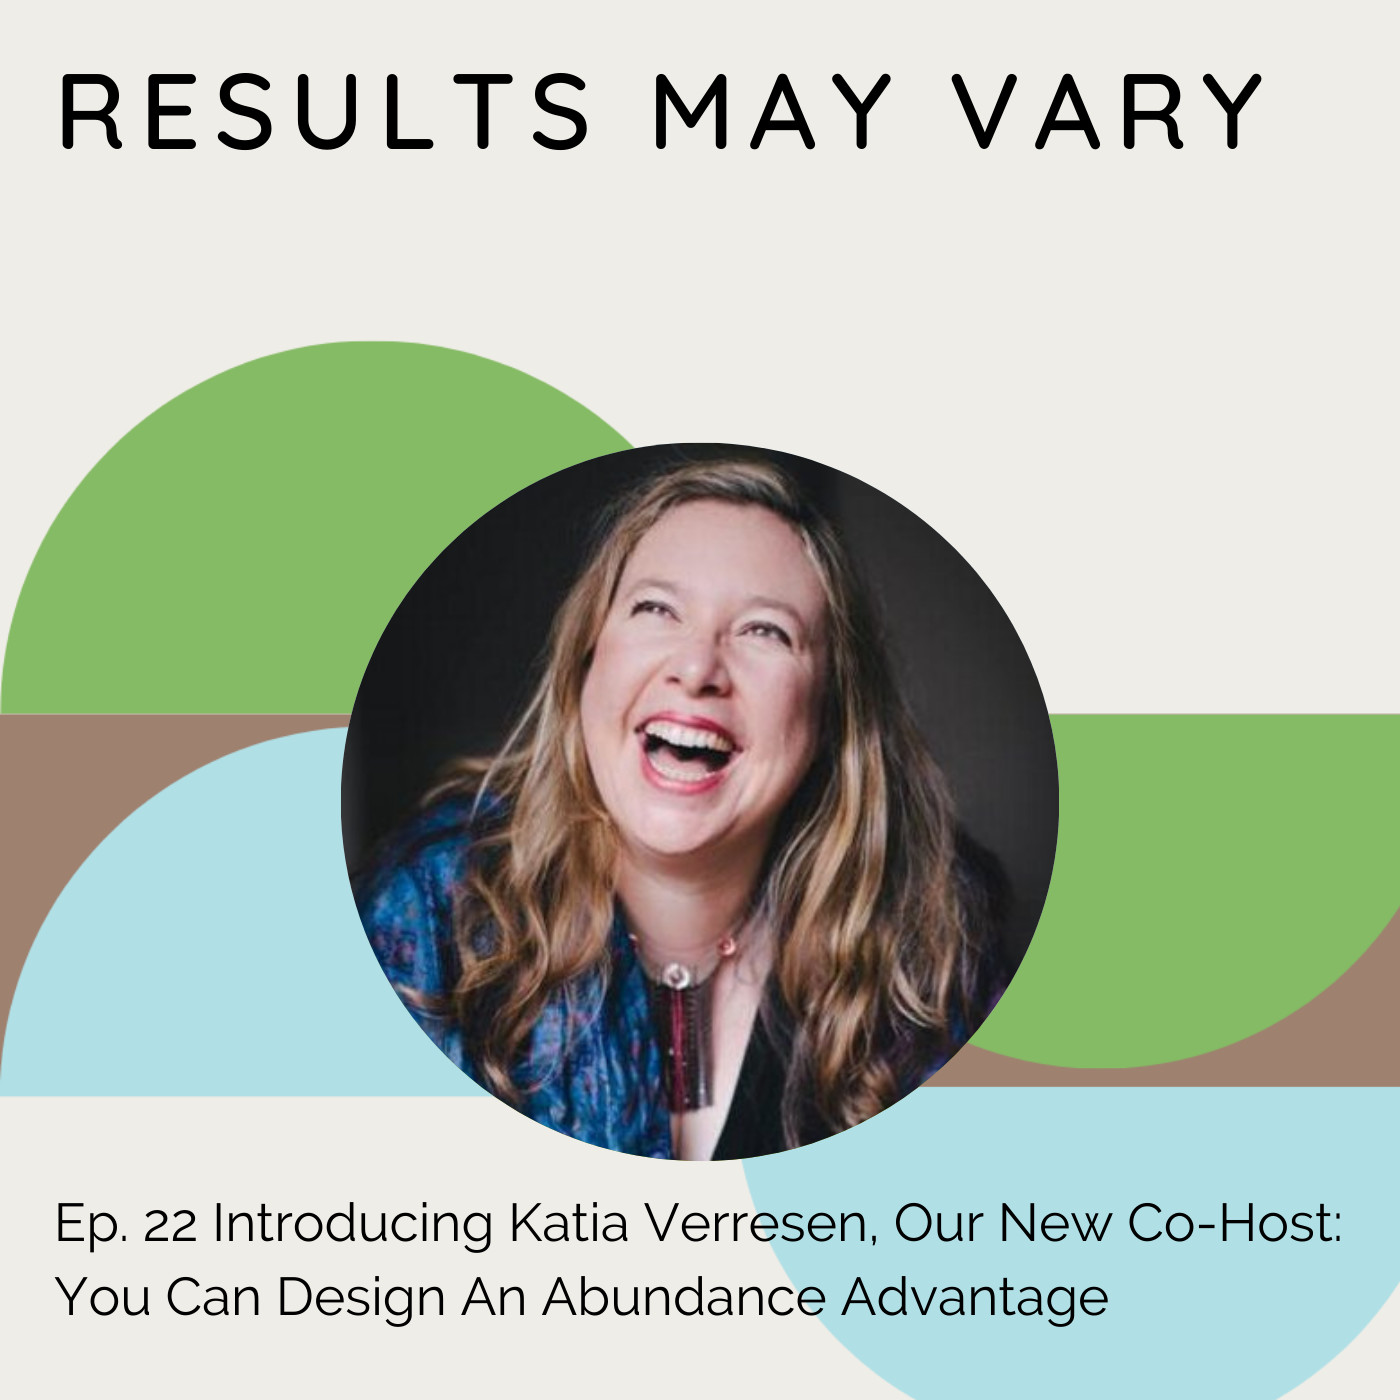 RMV 22 Introducing Katia Verresen, Our New Co-Host: You Can Design An Abundance Advantage